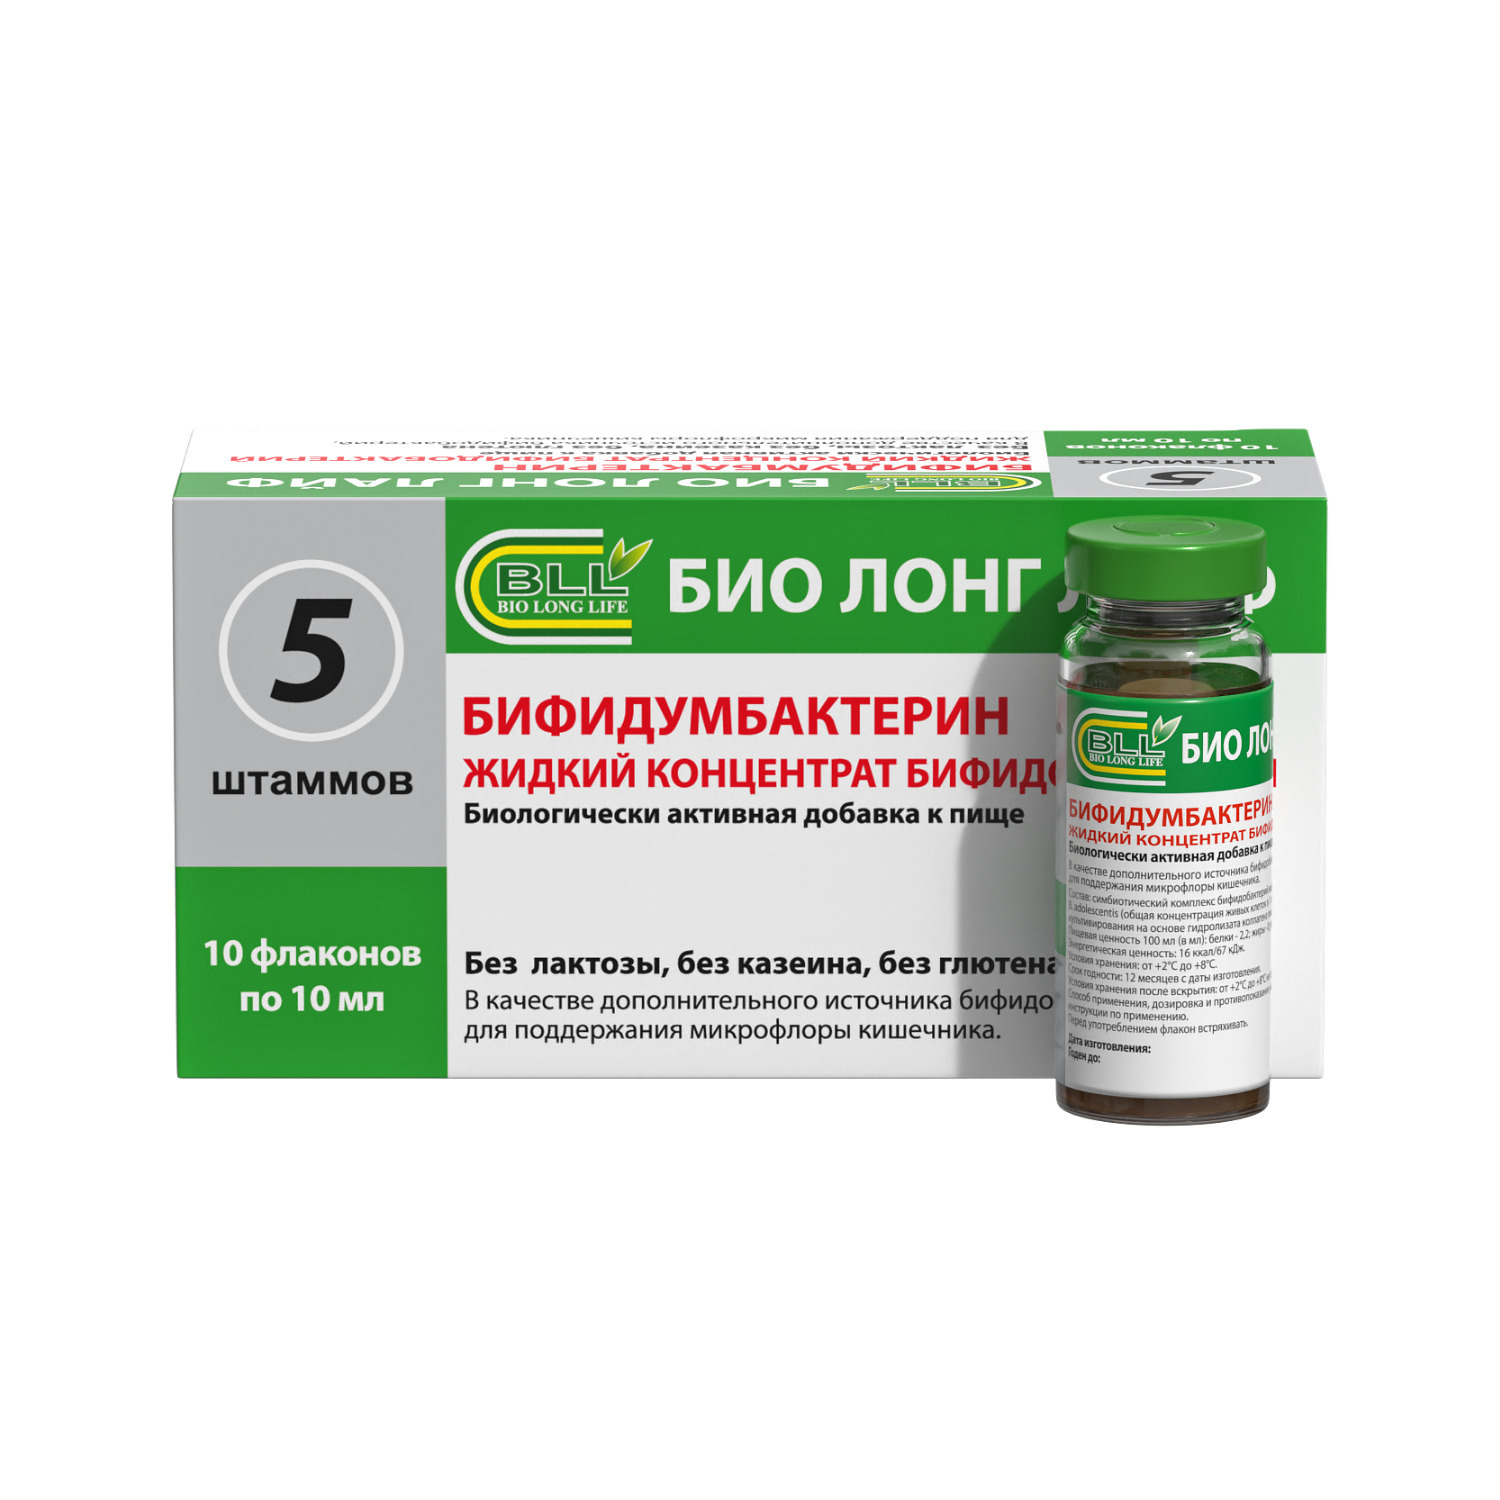 Бифидумбактерин (жидкий концентрат бифидобактерий) 10мл фл №10